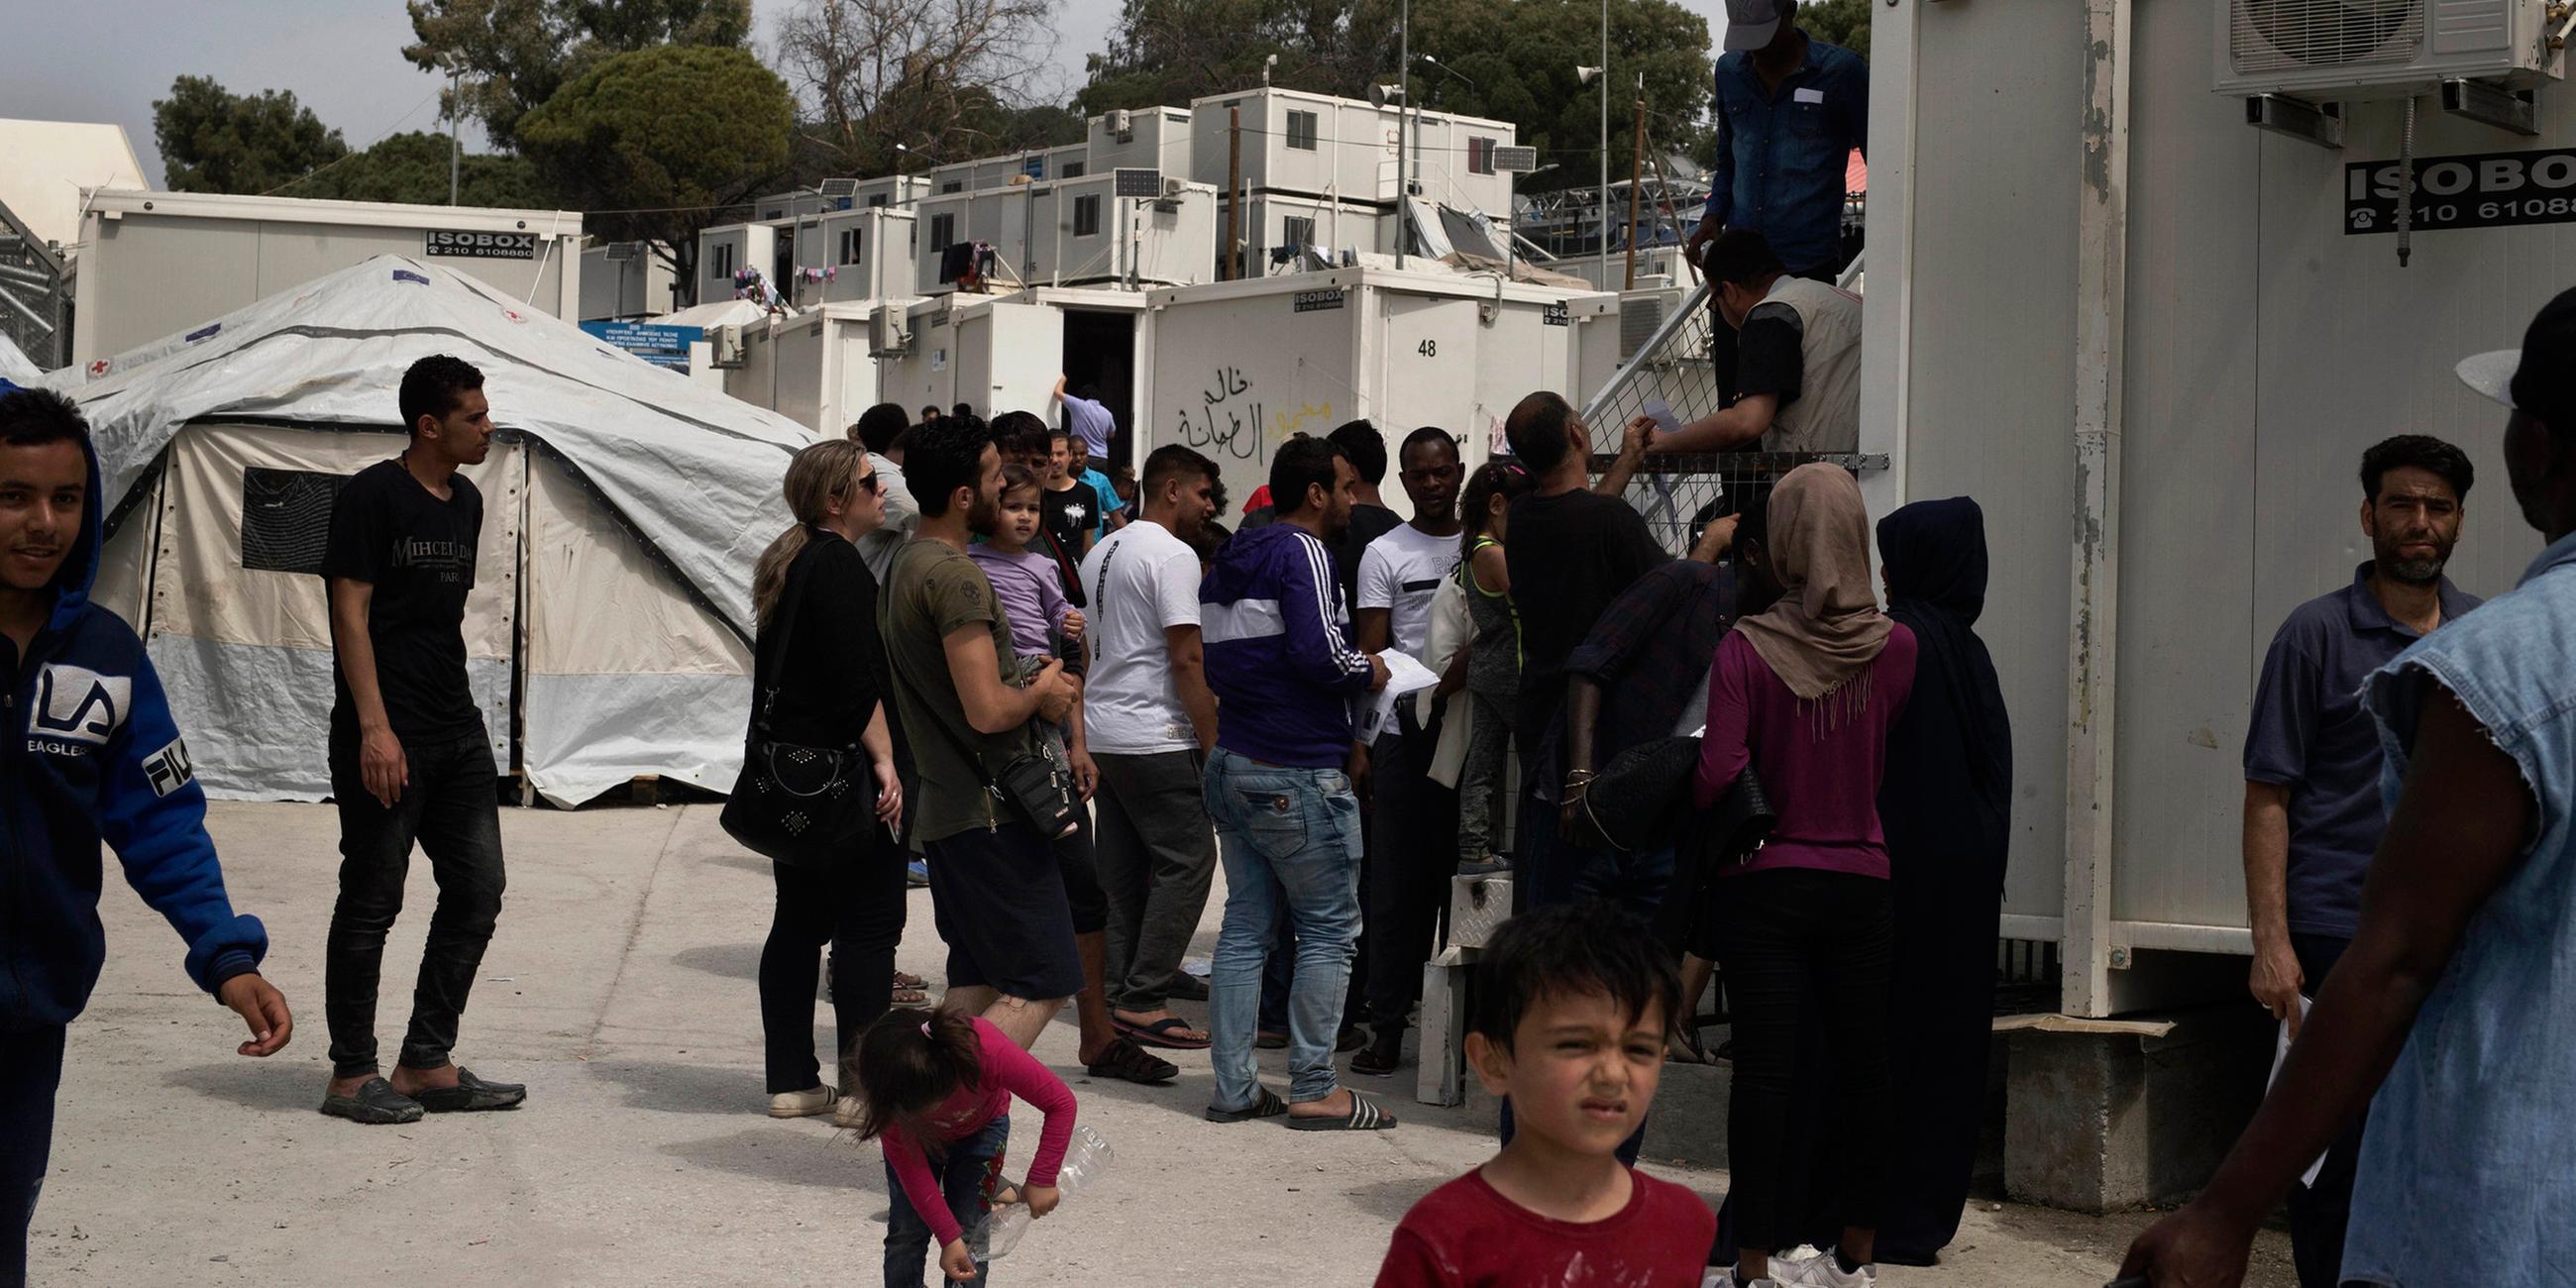 Archiv: Flüchtlinge in einem Lager am 04.05.2018 auf Lesbos